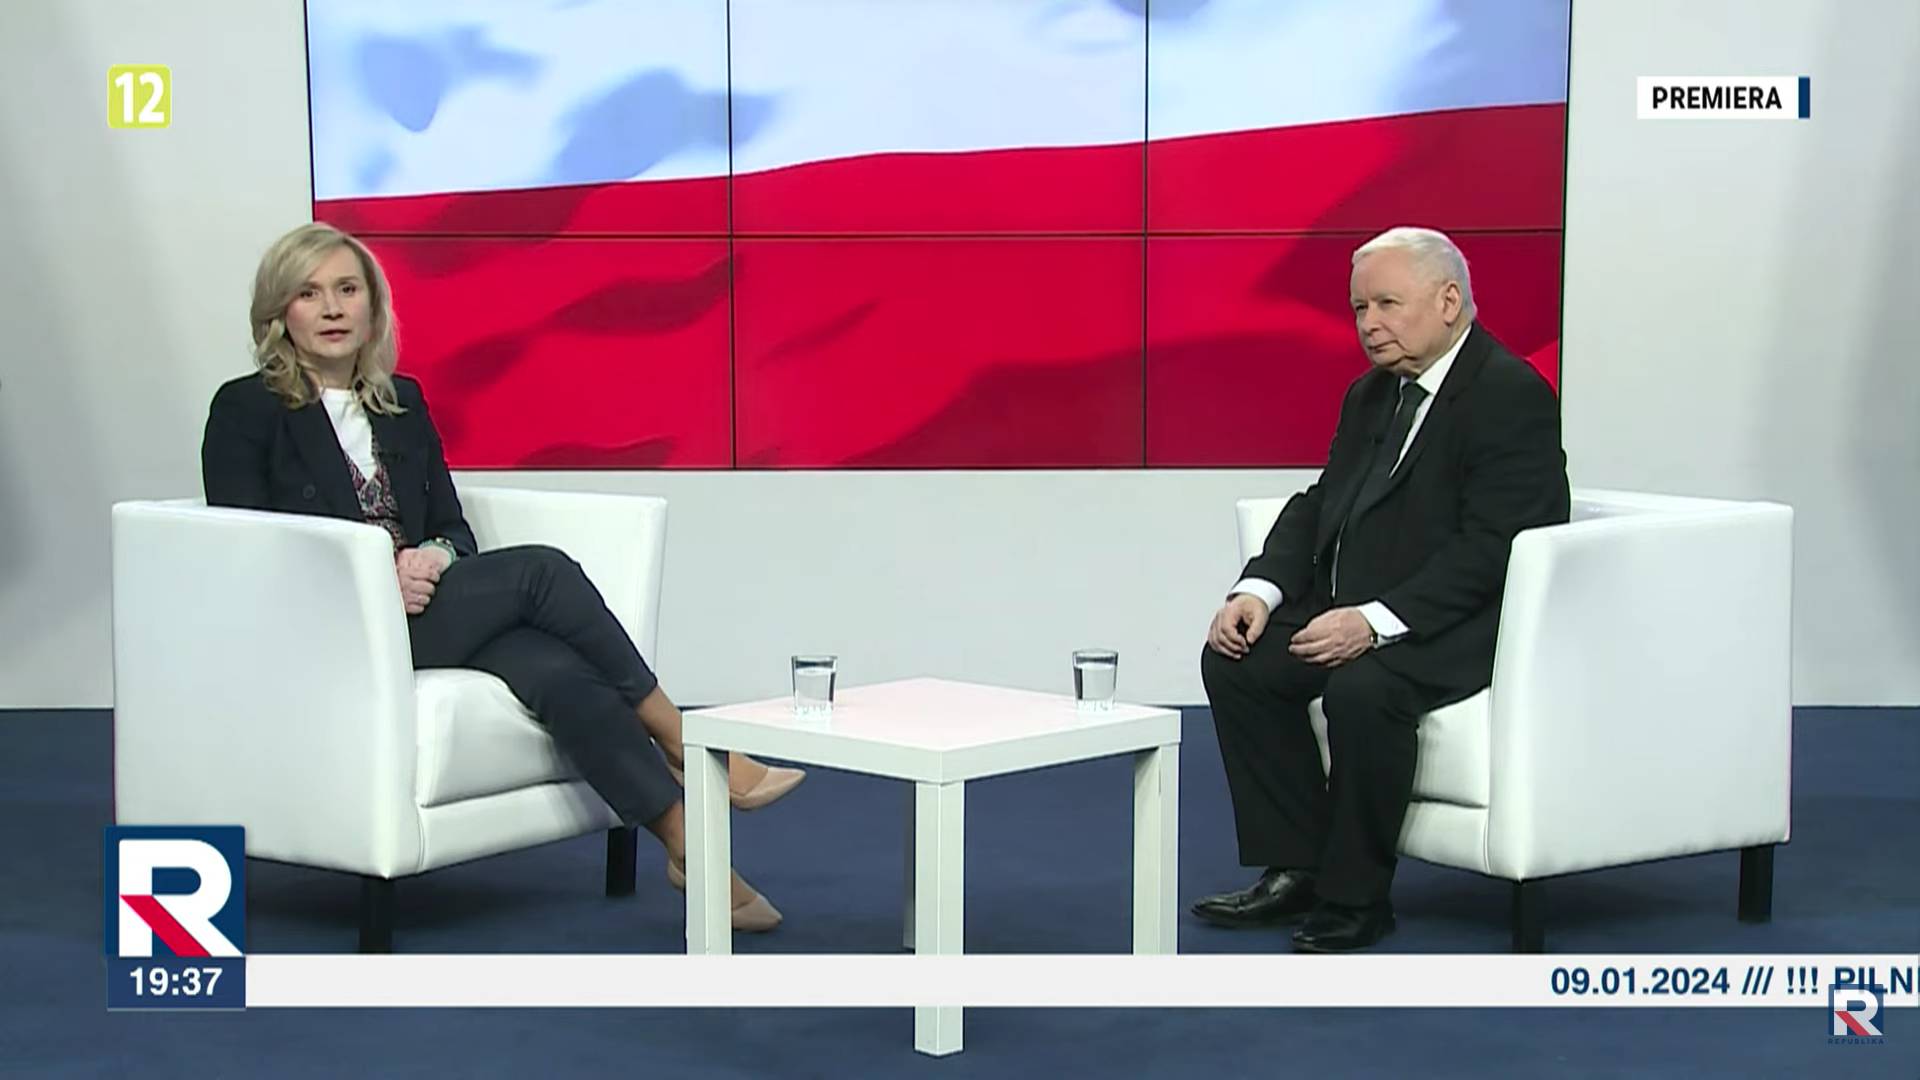 Jarosław kaczyński udziela wywiadu w TV Repyblika. na ekranie napis "Premiera"